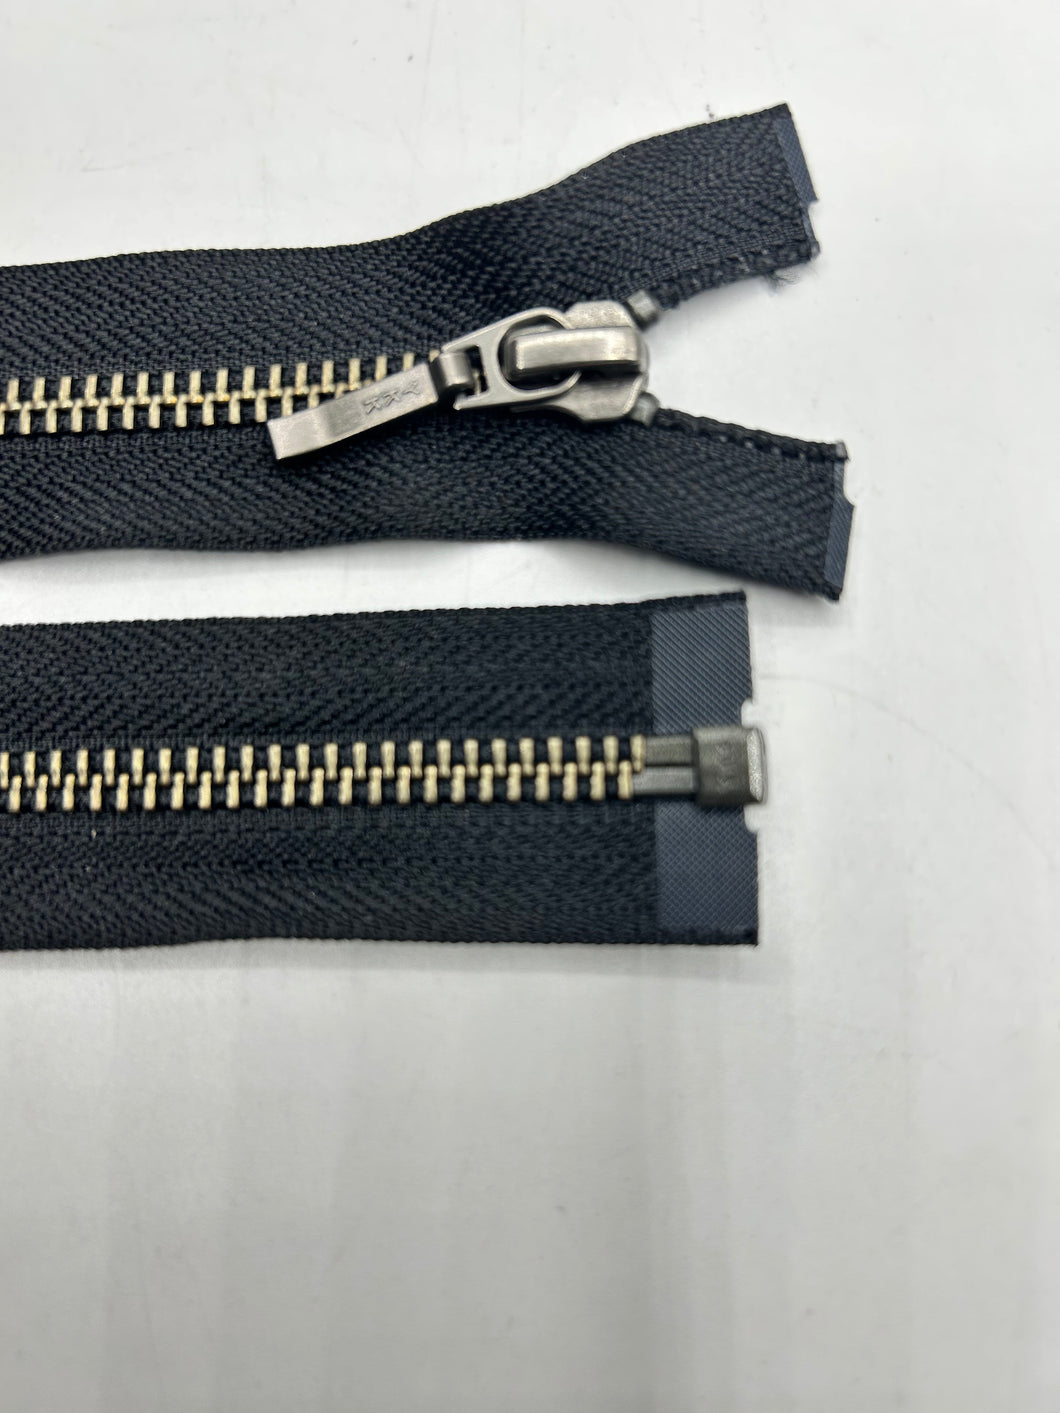 Separating Metal Zipper, 21